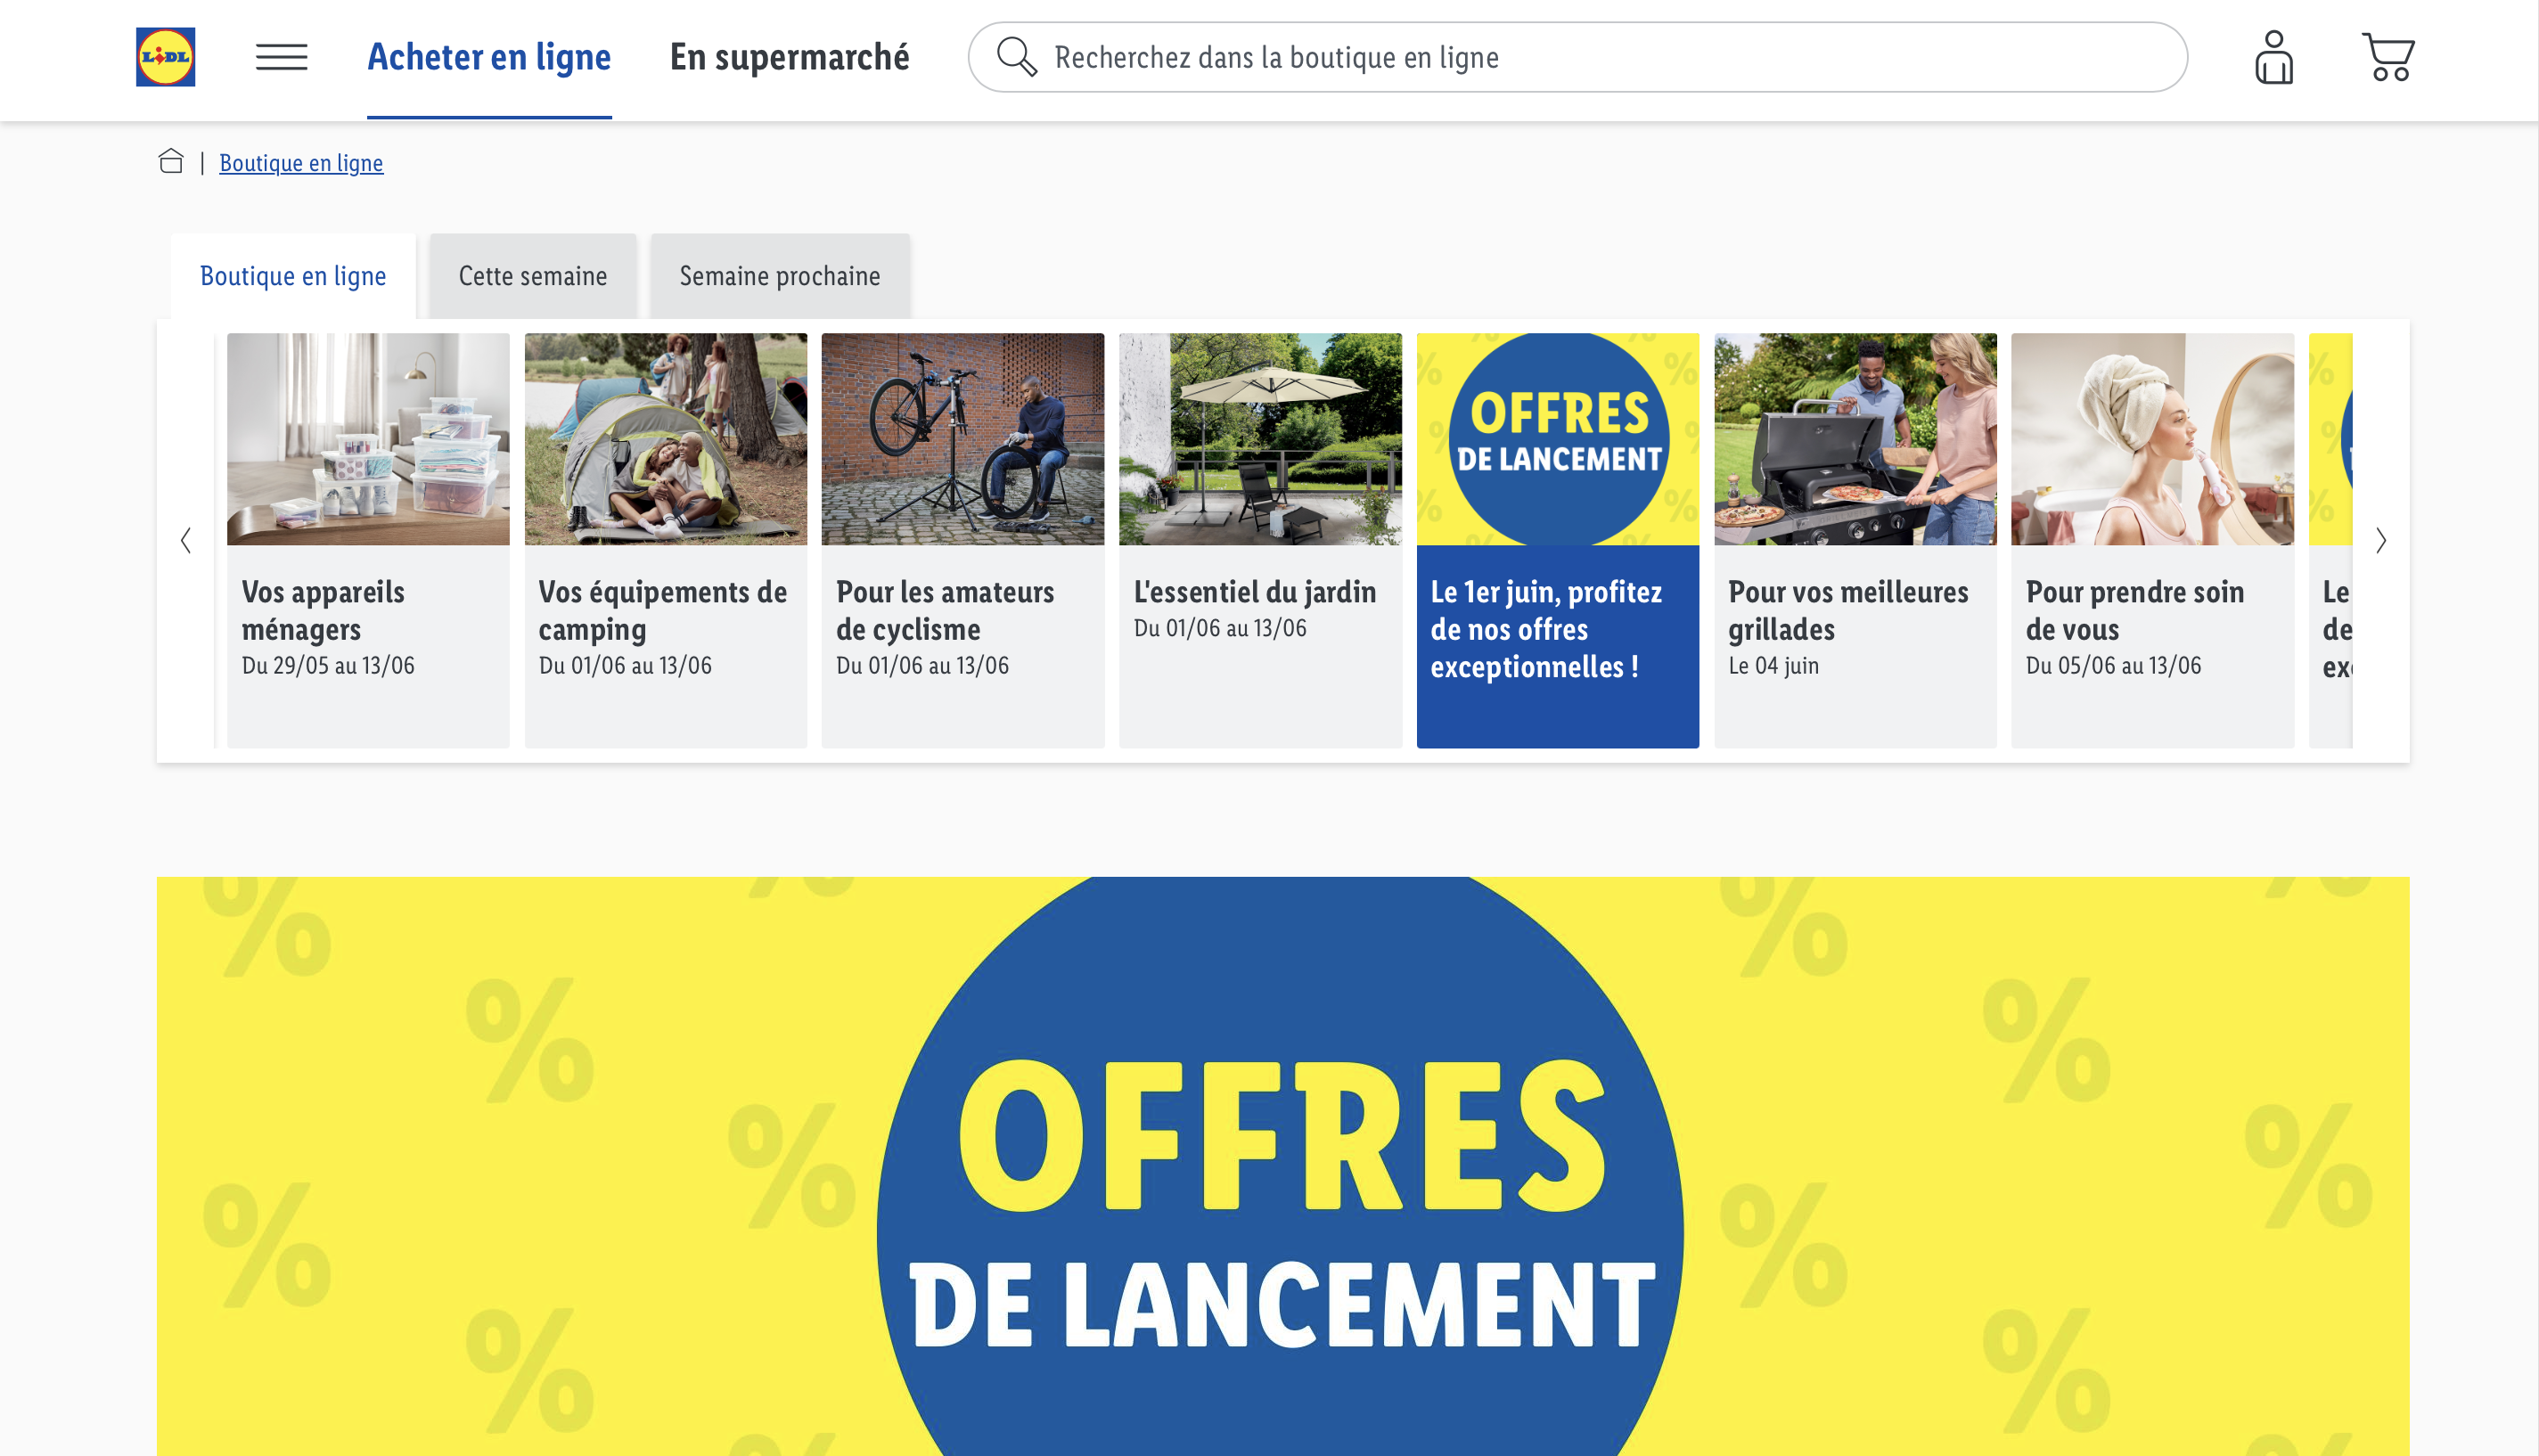 Lidl lance son site de vente en ligne en France, ce qu'il faut savoir